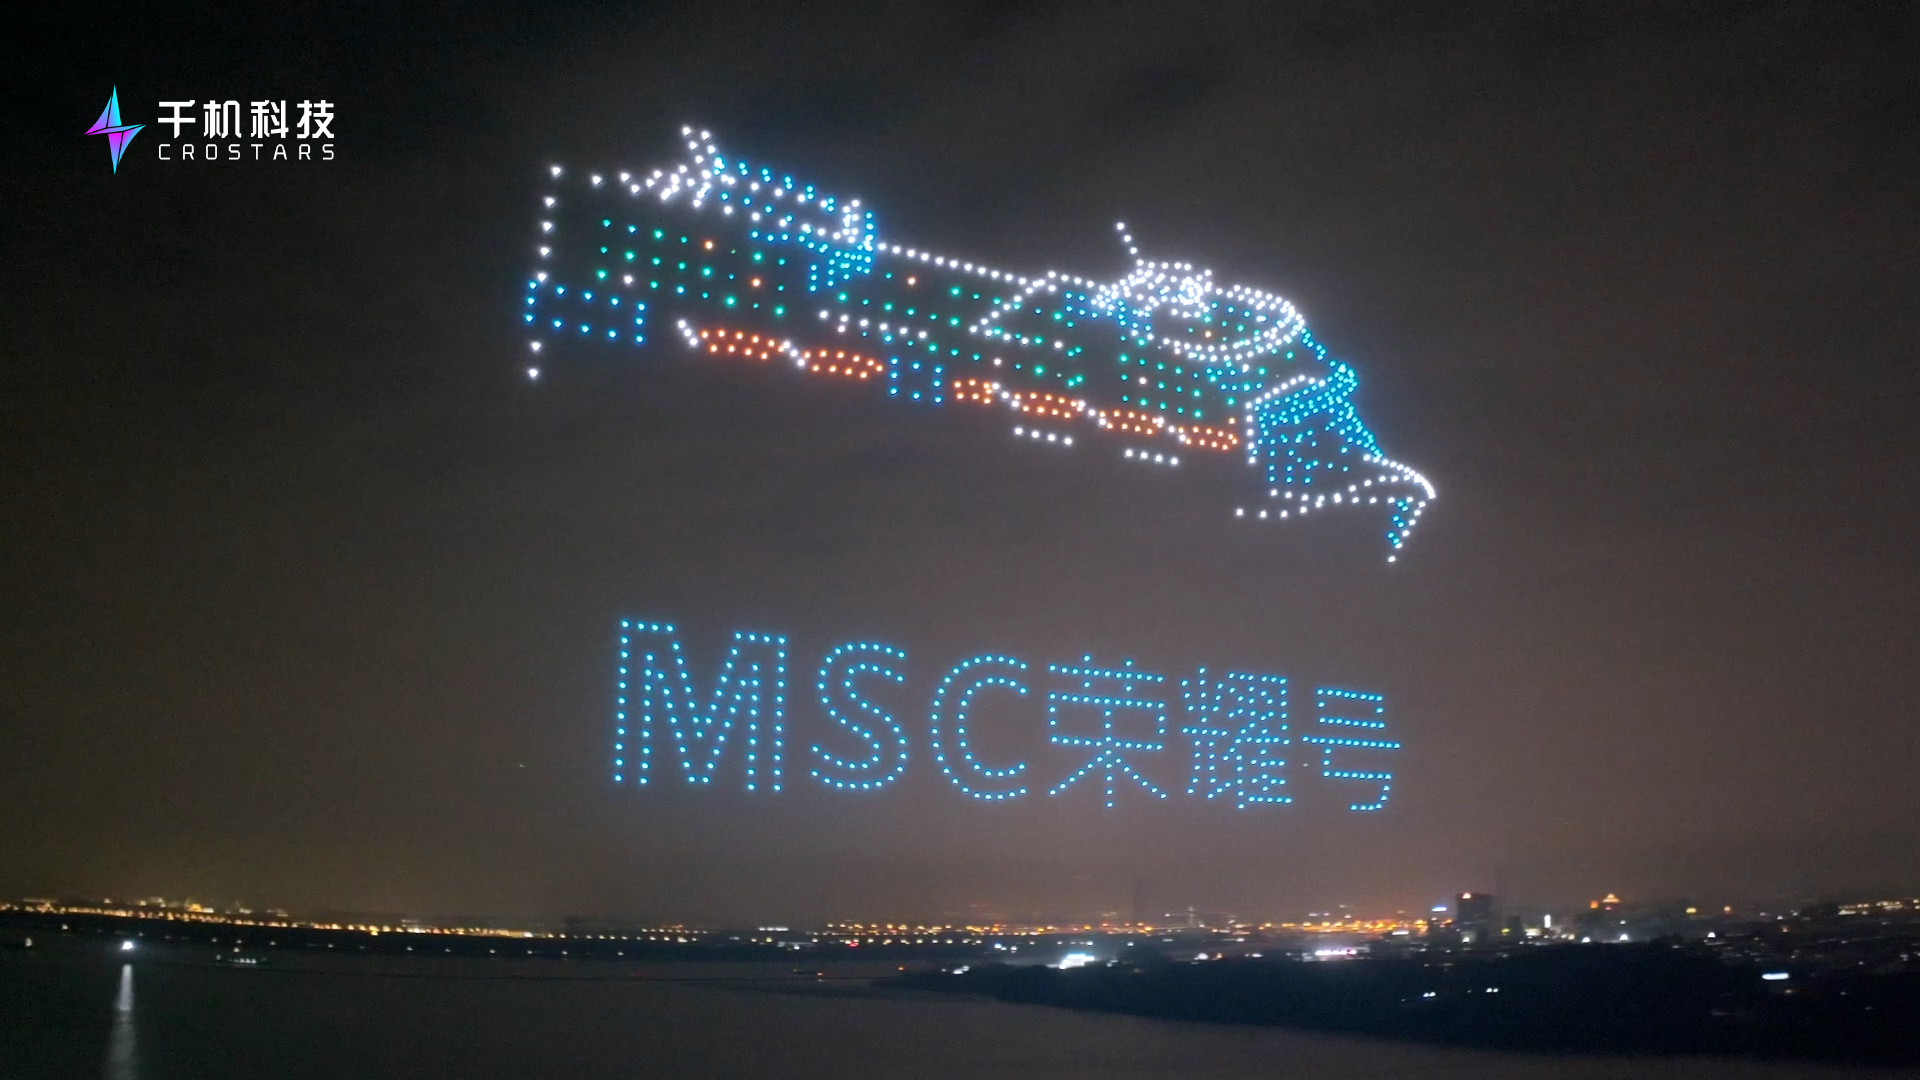 上海邮轮港MSC首航